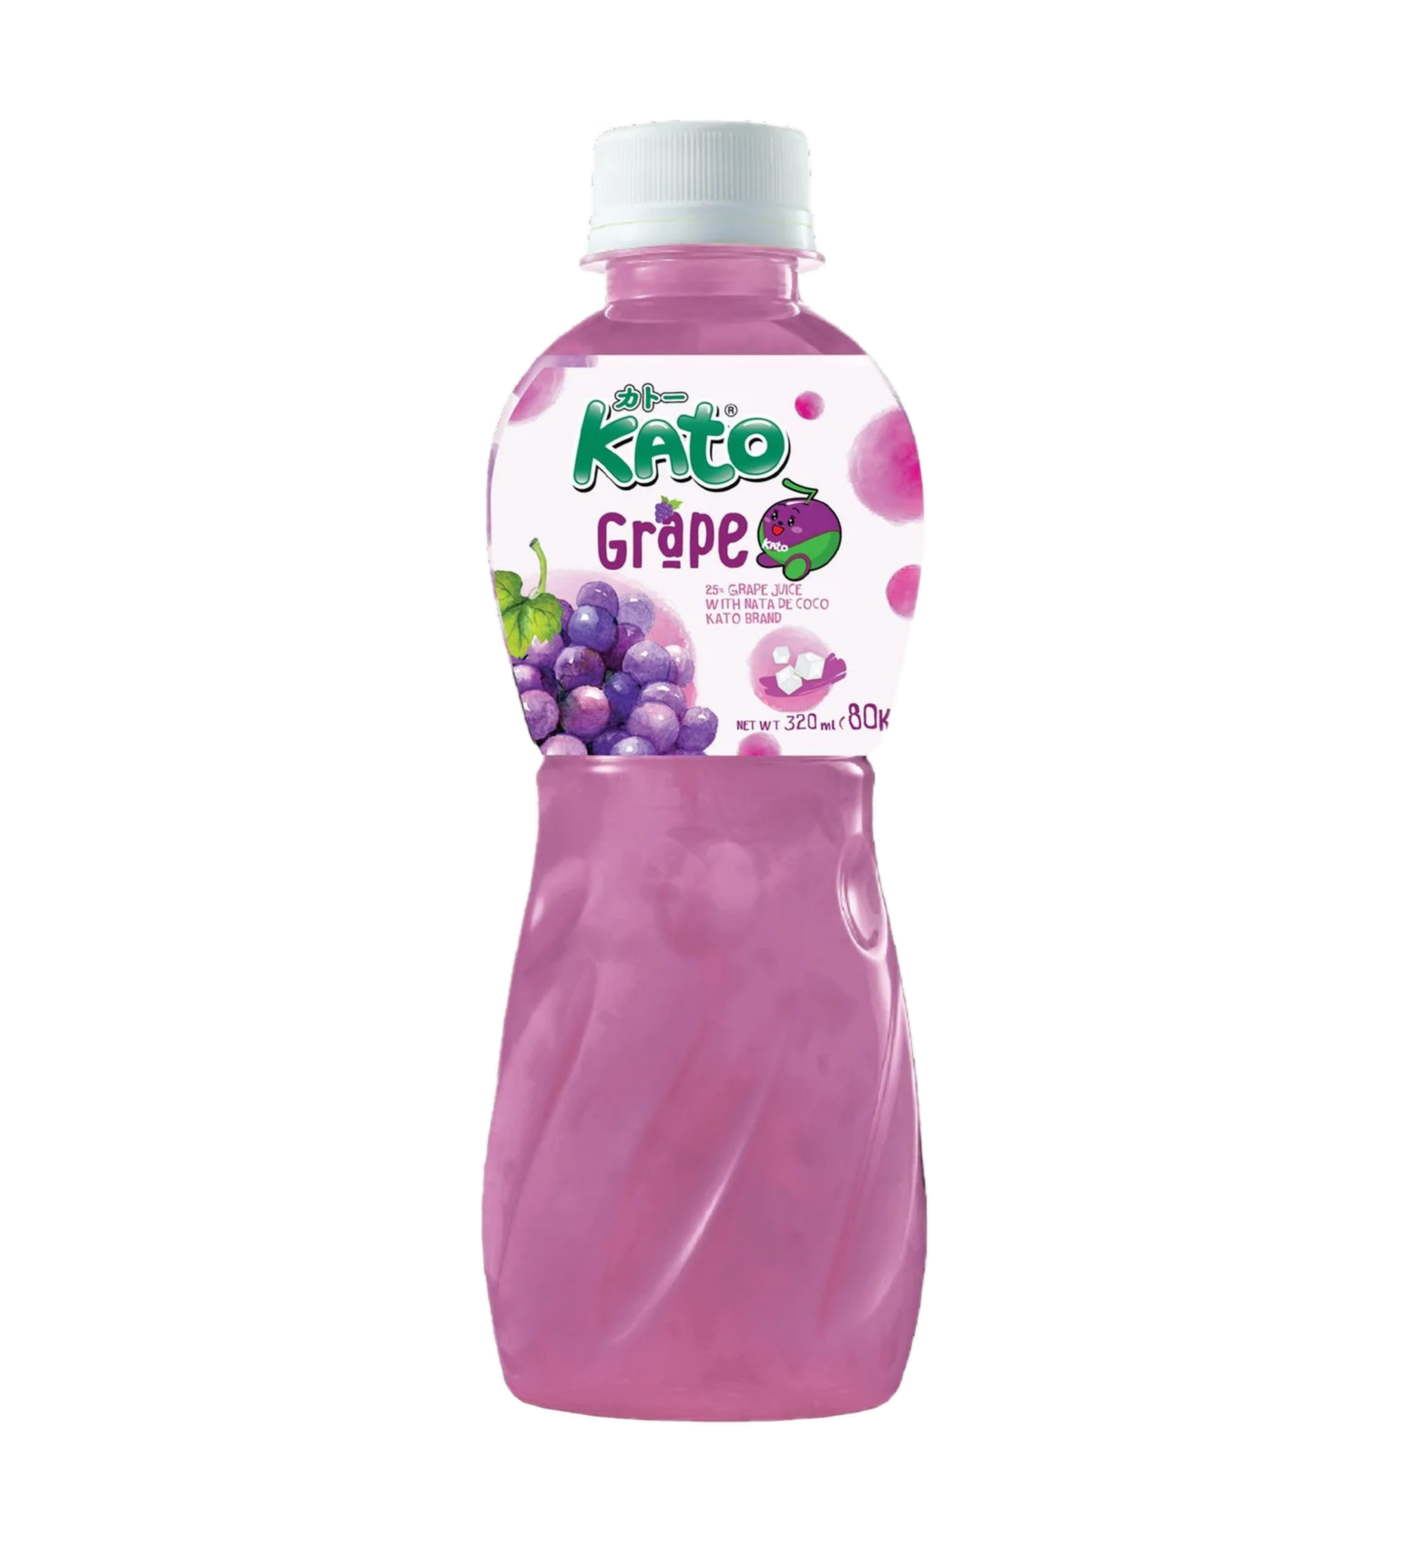 Kato  Grape juice with nata de coco (320ml)